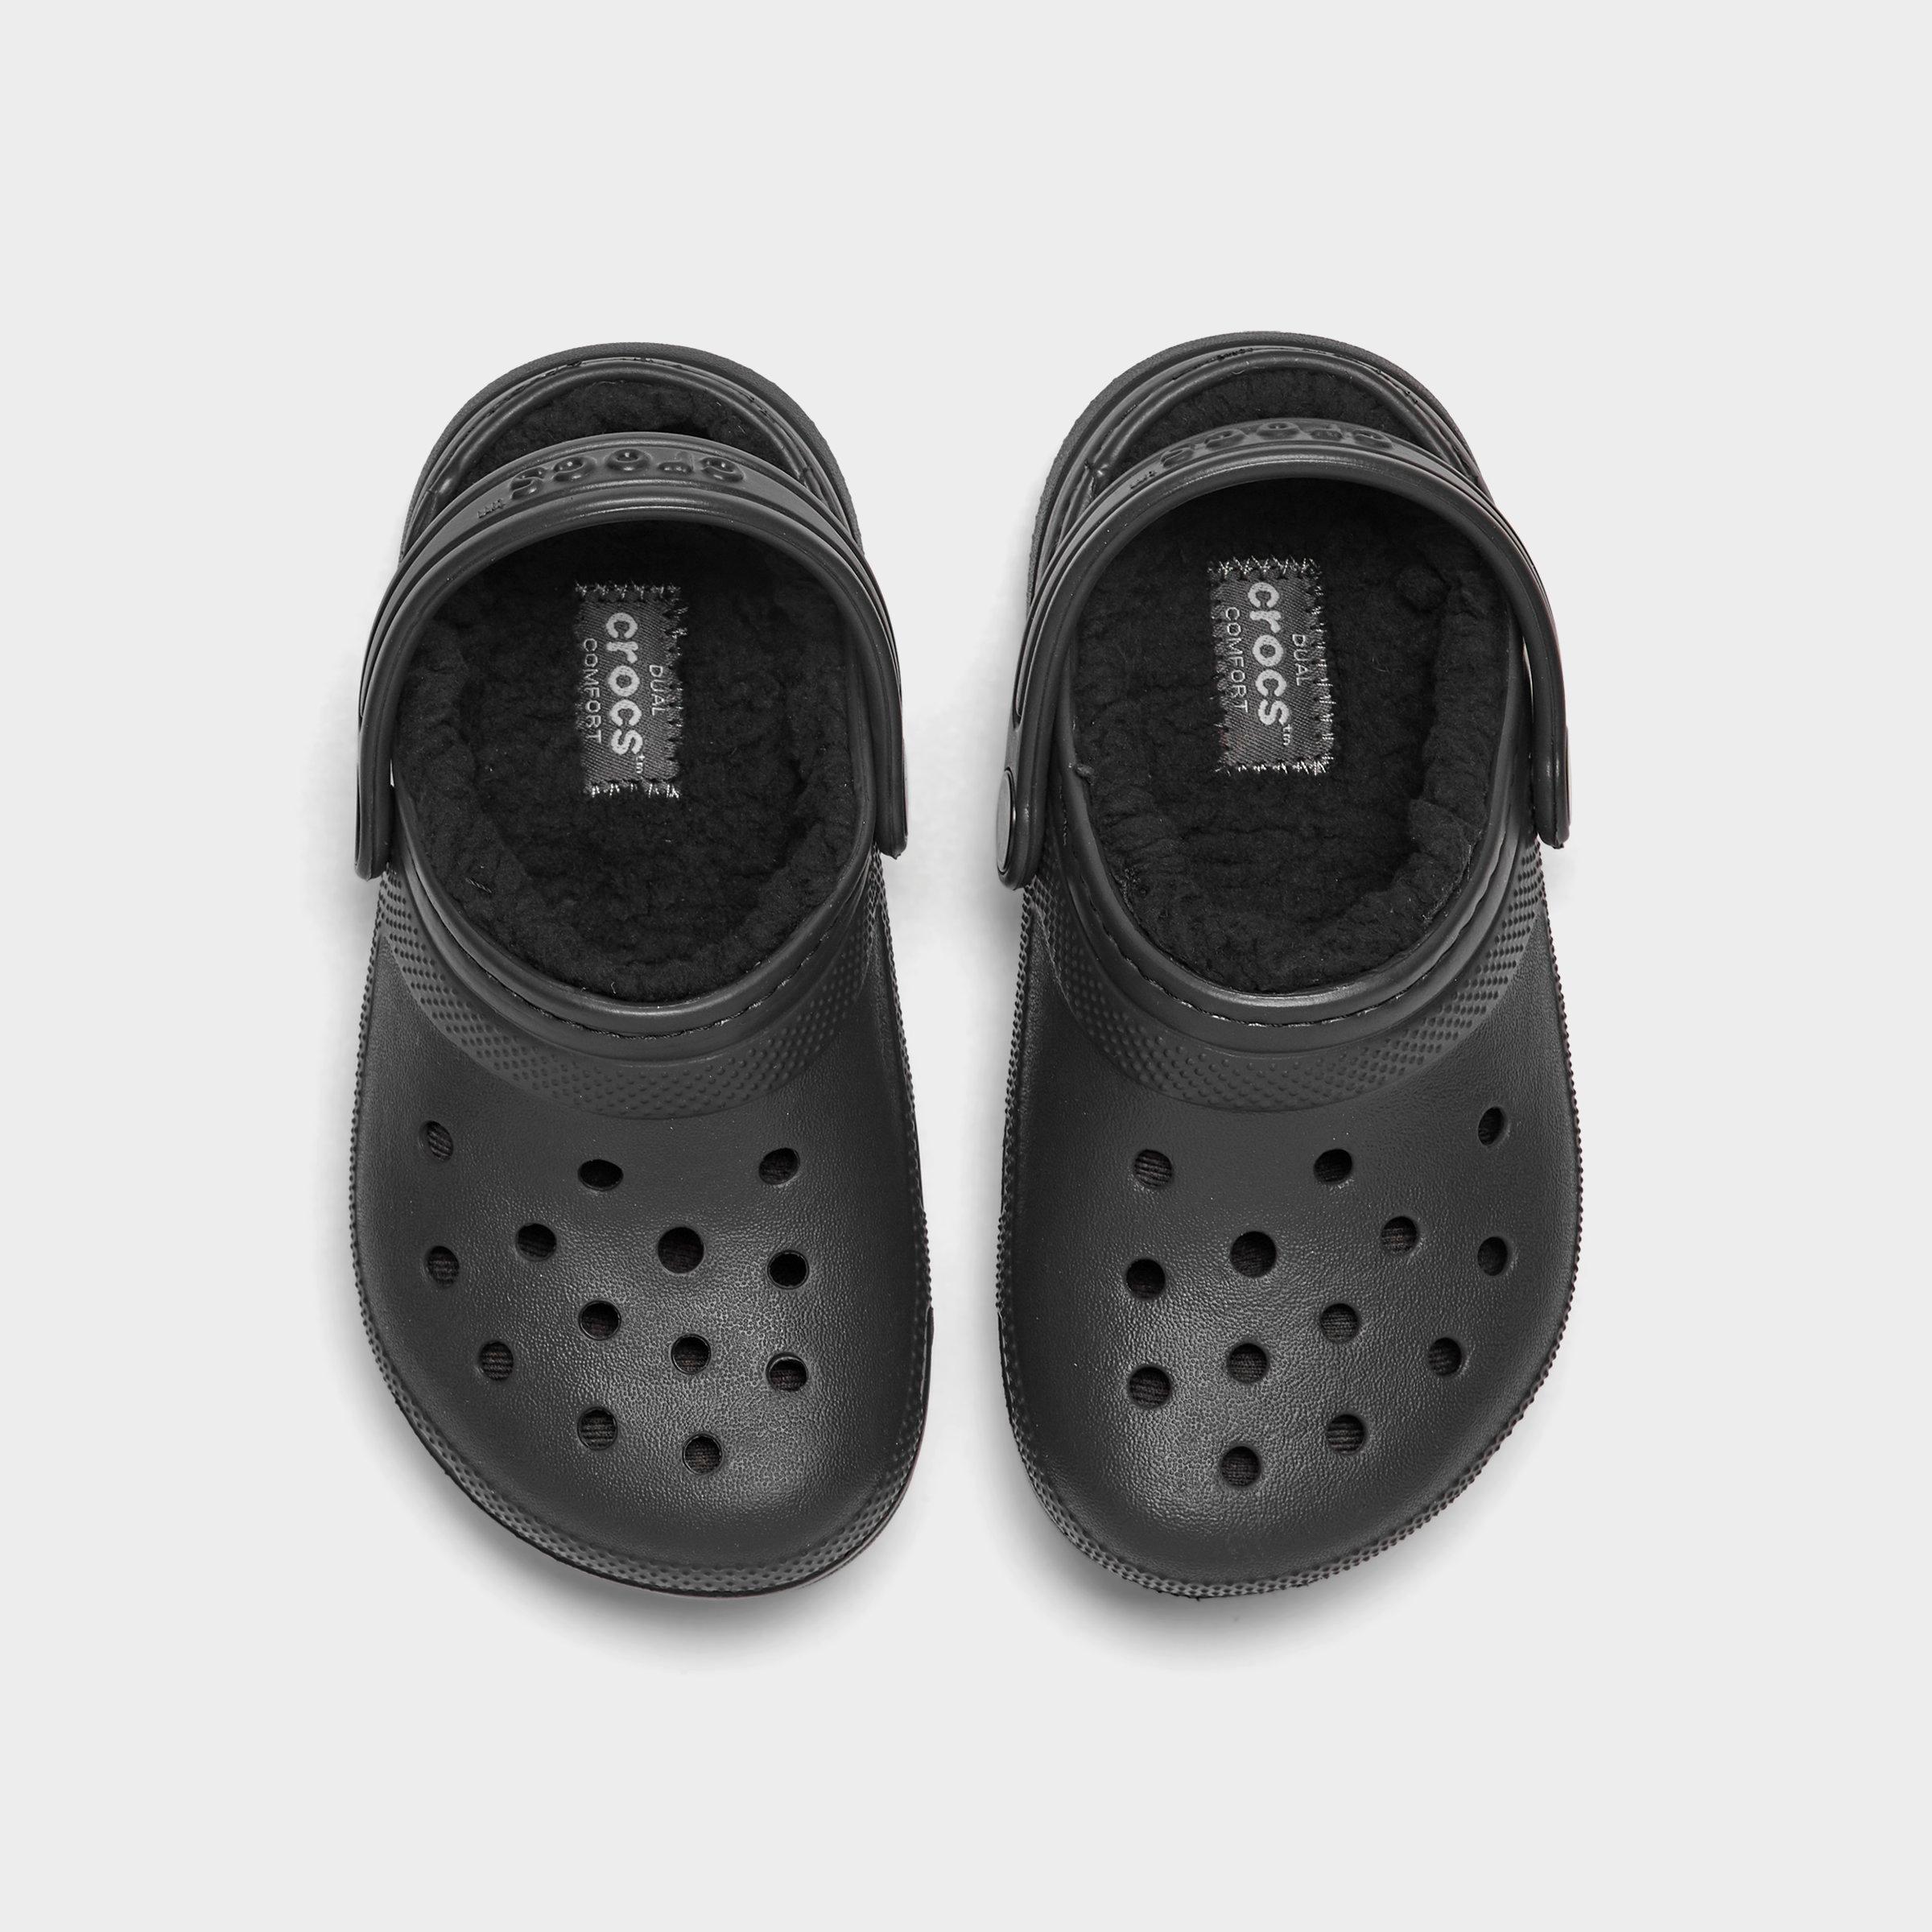 classic lined crocs black